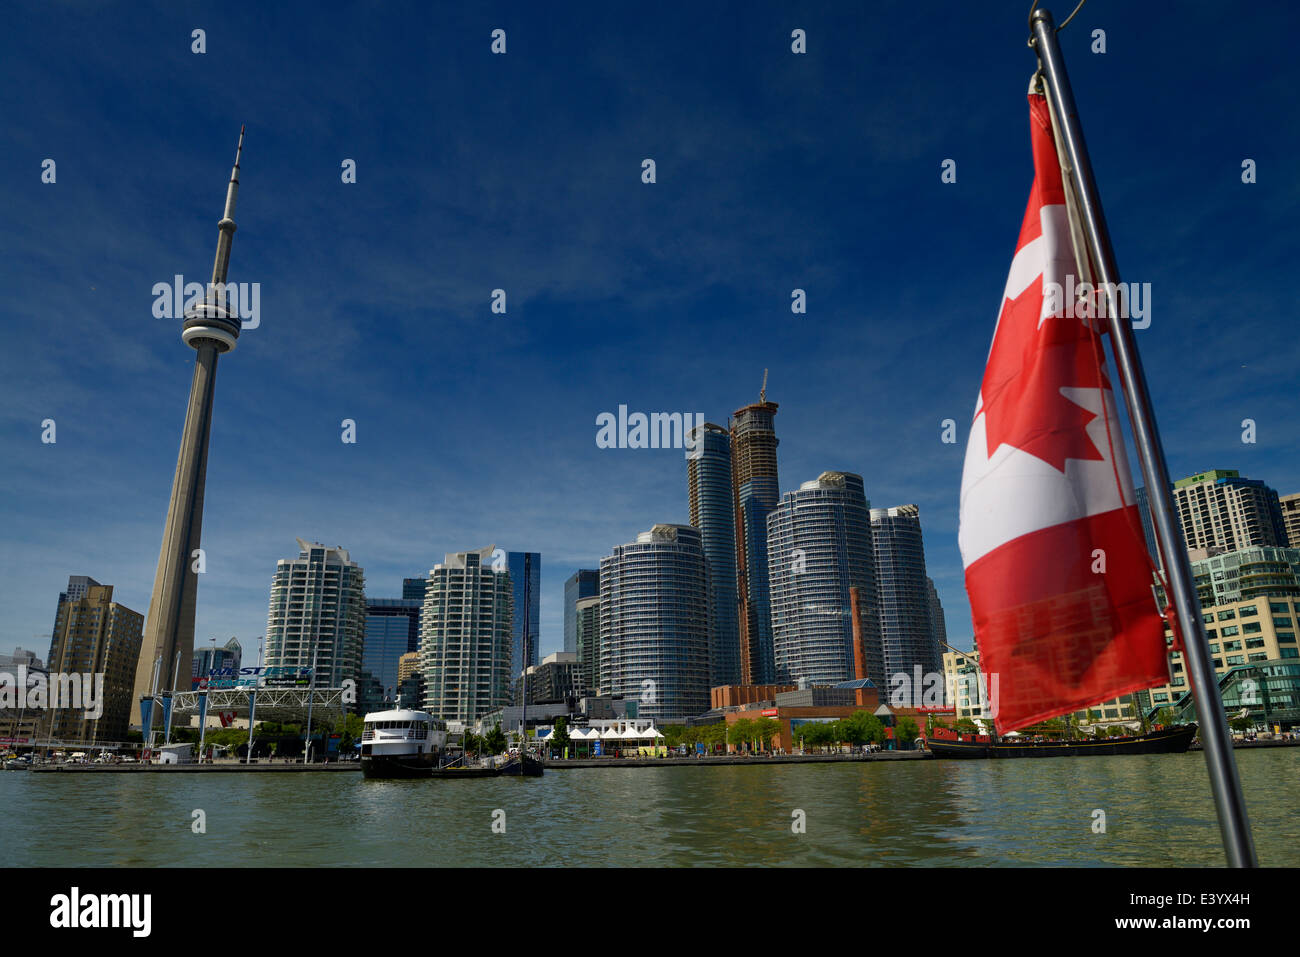 Drapeau du Canada sur un bateau avec ville de Toronto et la Tour CN Harbourfront sur le lac Ontario Banque D'Images